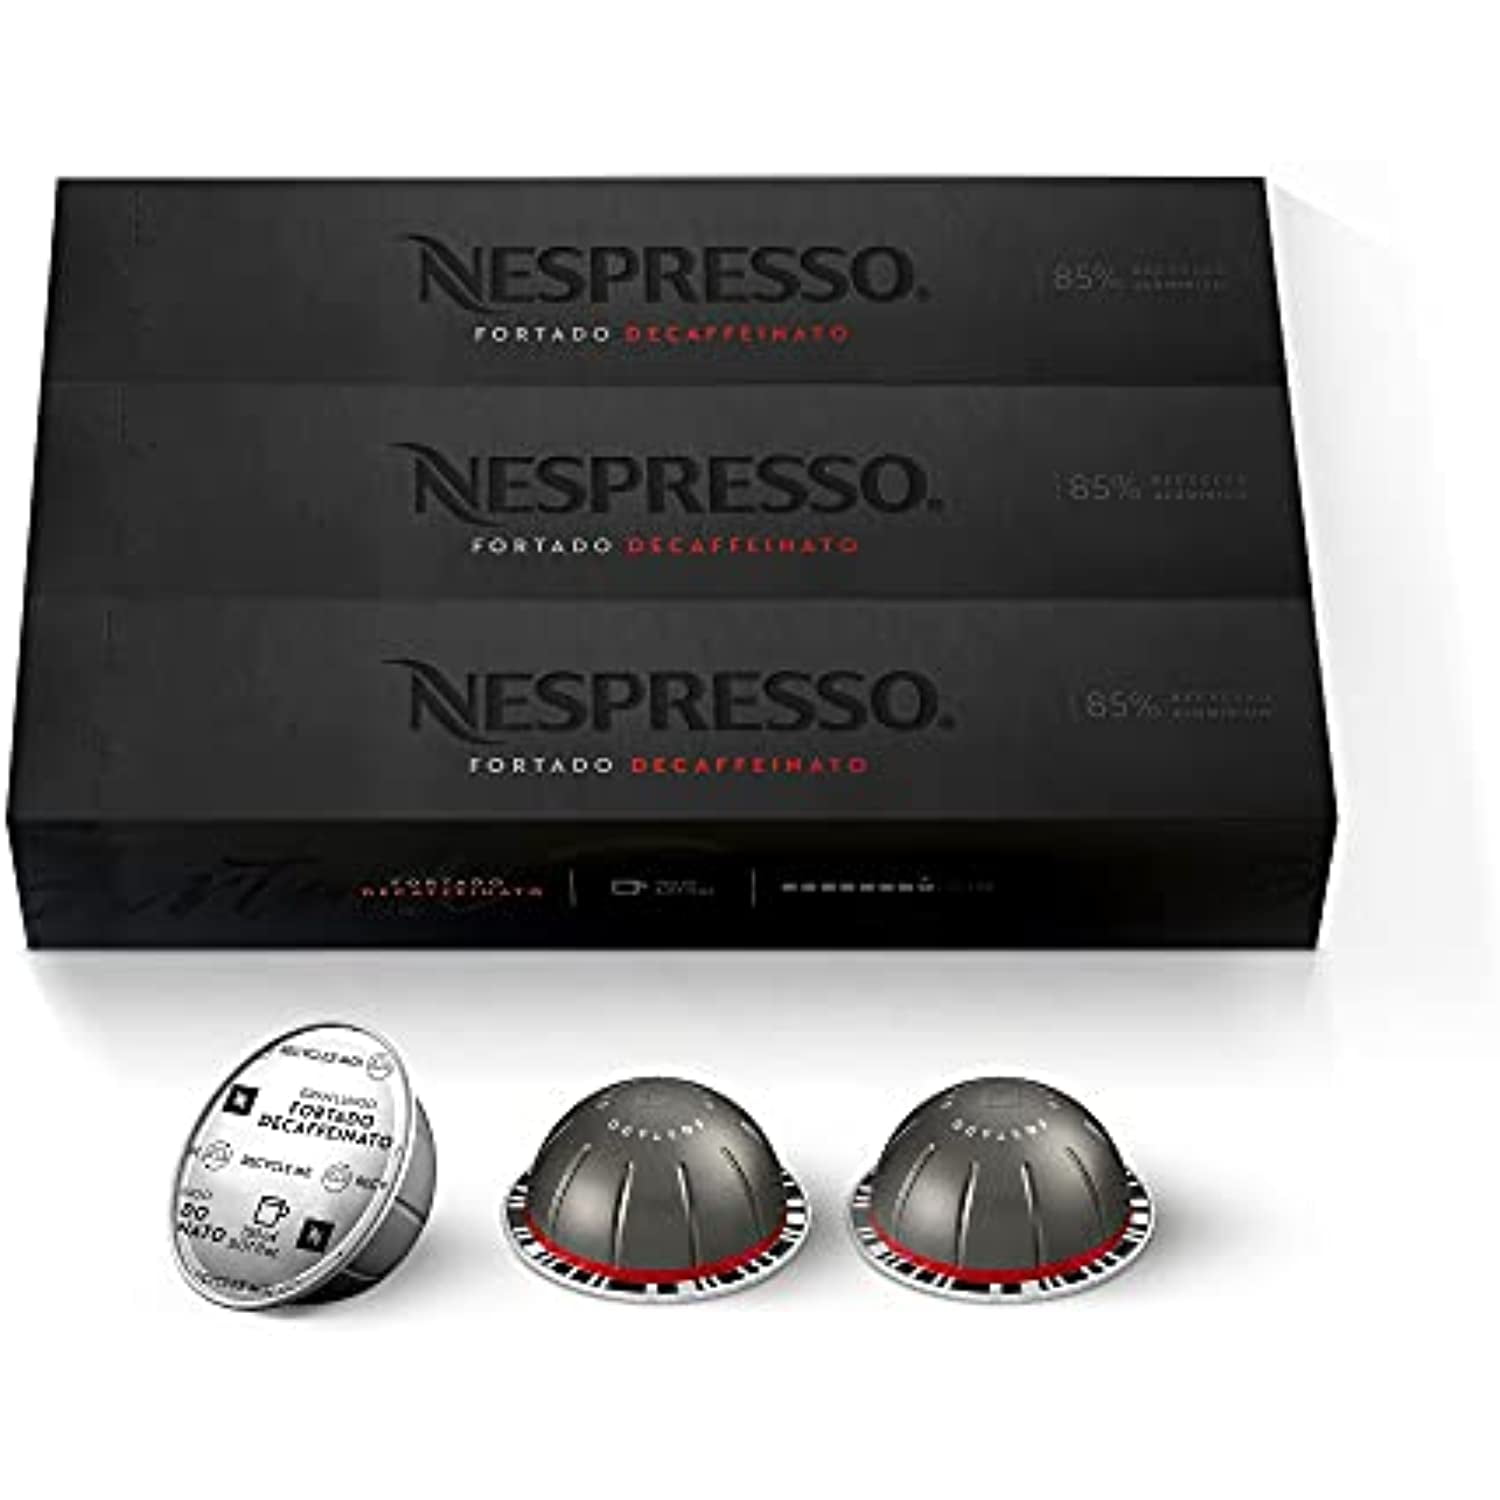 Nespresso Vertuo Fortado Decaffeinato, Gran Lungo, 30 cápsulas de café  (solo VERTUO)